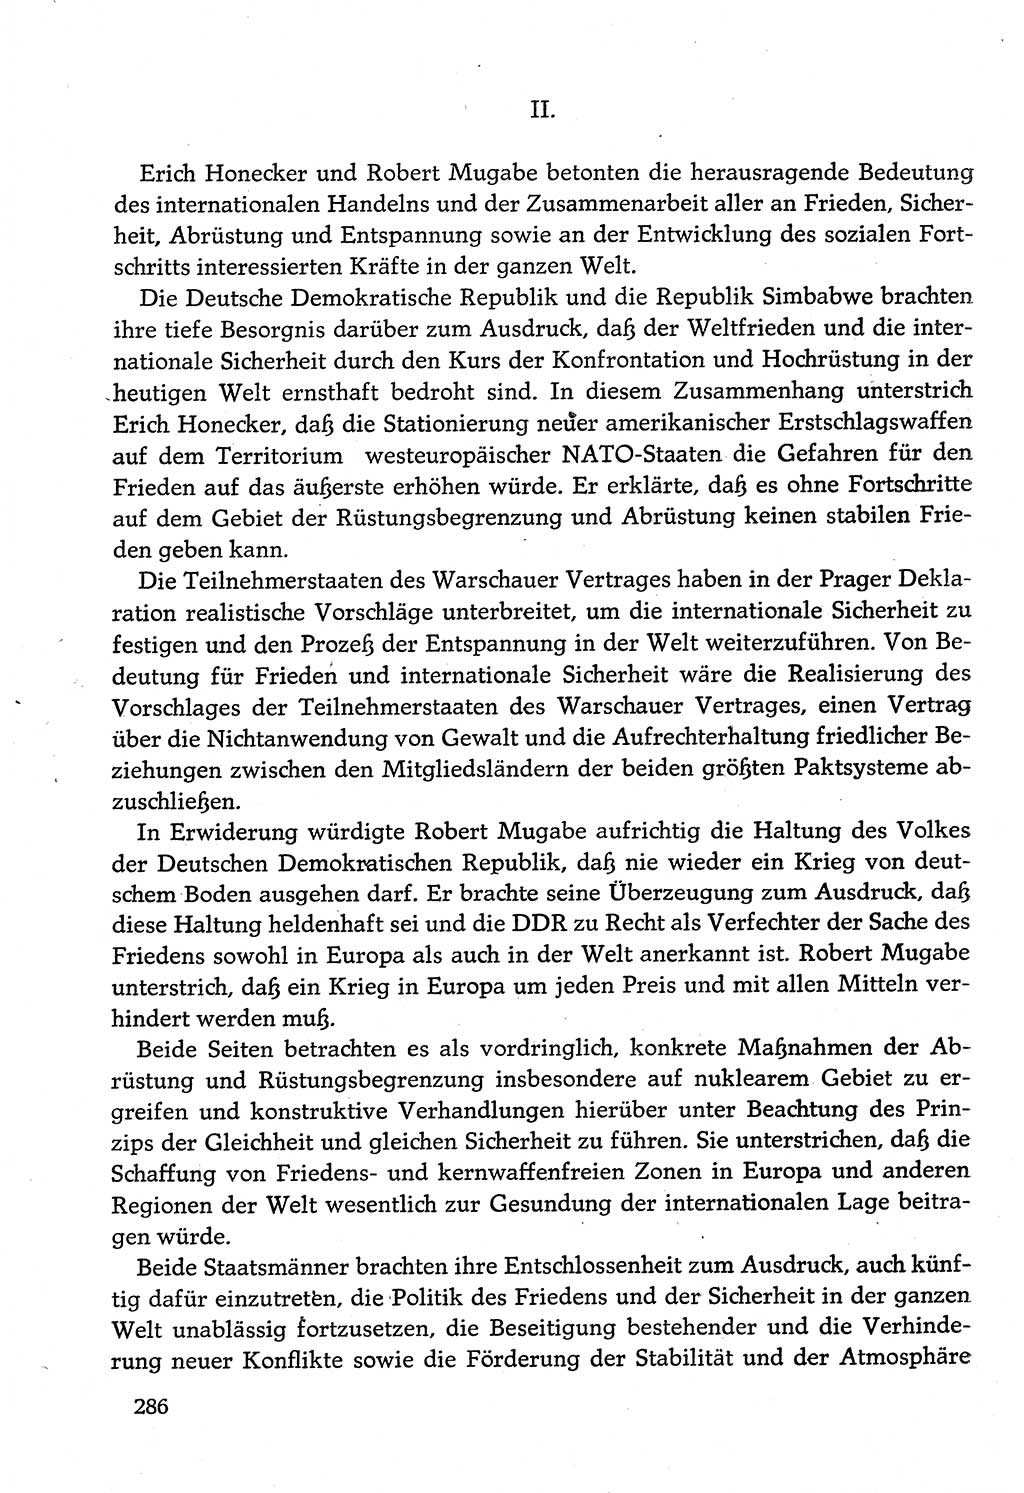 Dokumente der Sozialistischen Einheitspartei Deutschlands (SED) [Deutsche Demokratische Republik (DDR)] 1982-1983, Seite 286 (Dok. SED DDR 1982-1983, S. 286)